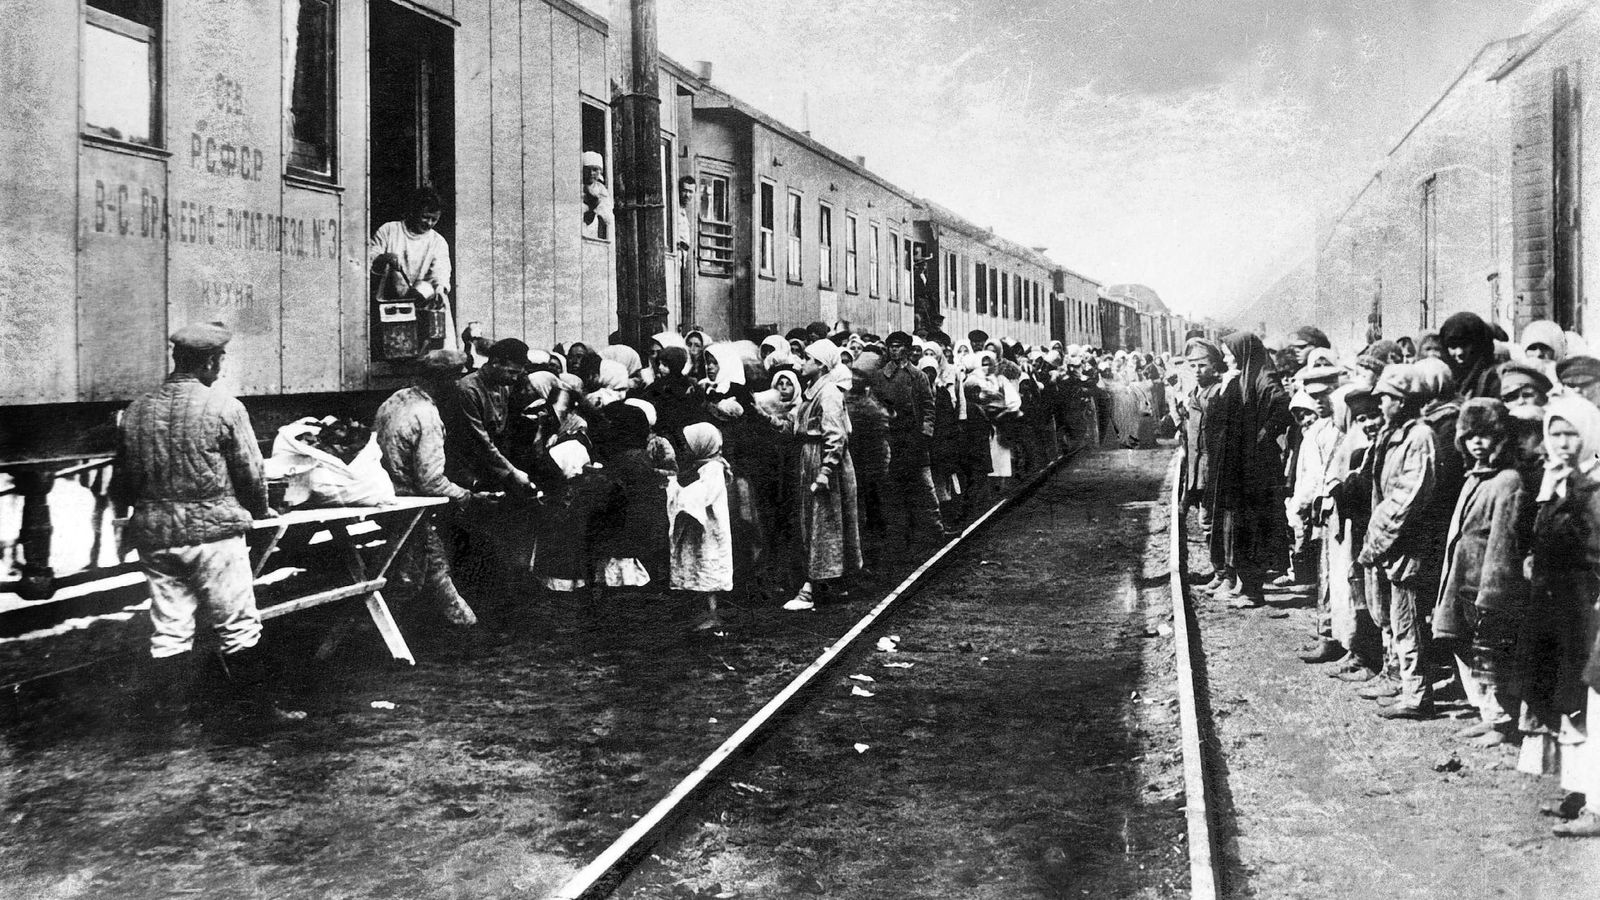 Foto: Prisioneros esperando ser transportados a los campos de trabajo soviéticos en los años 20. (Cordon Press)